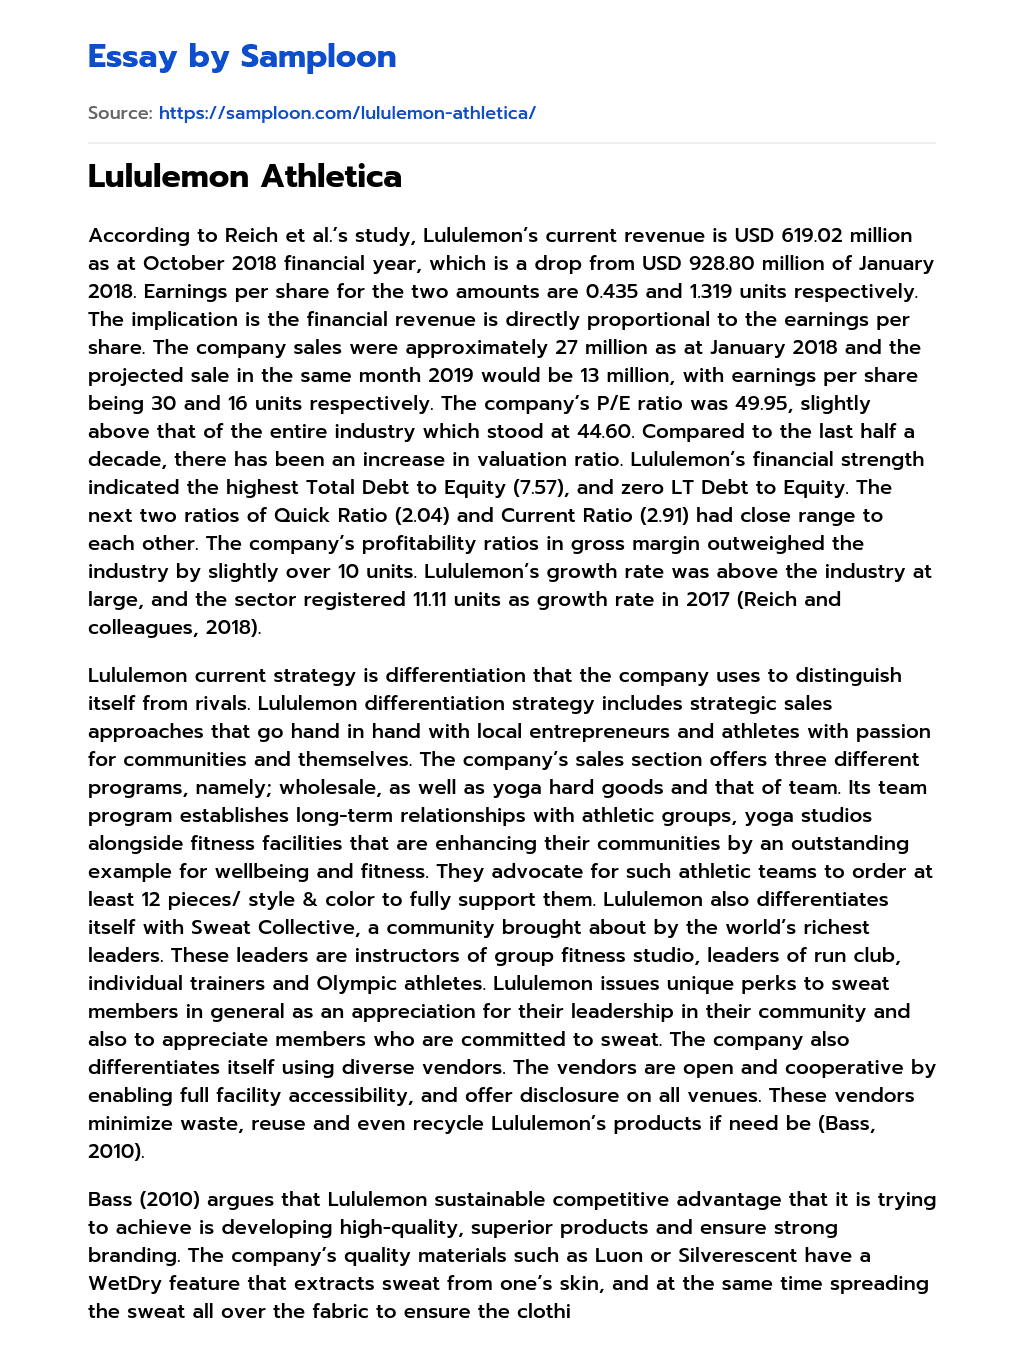 Lululemon Athletica essay